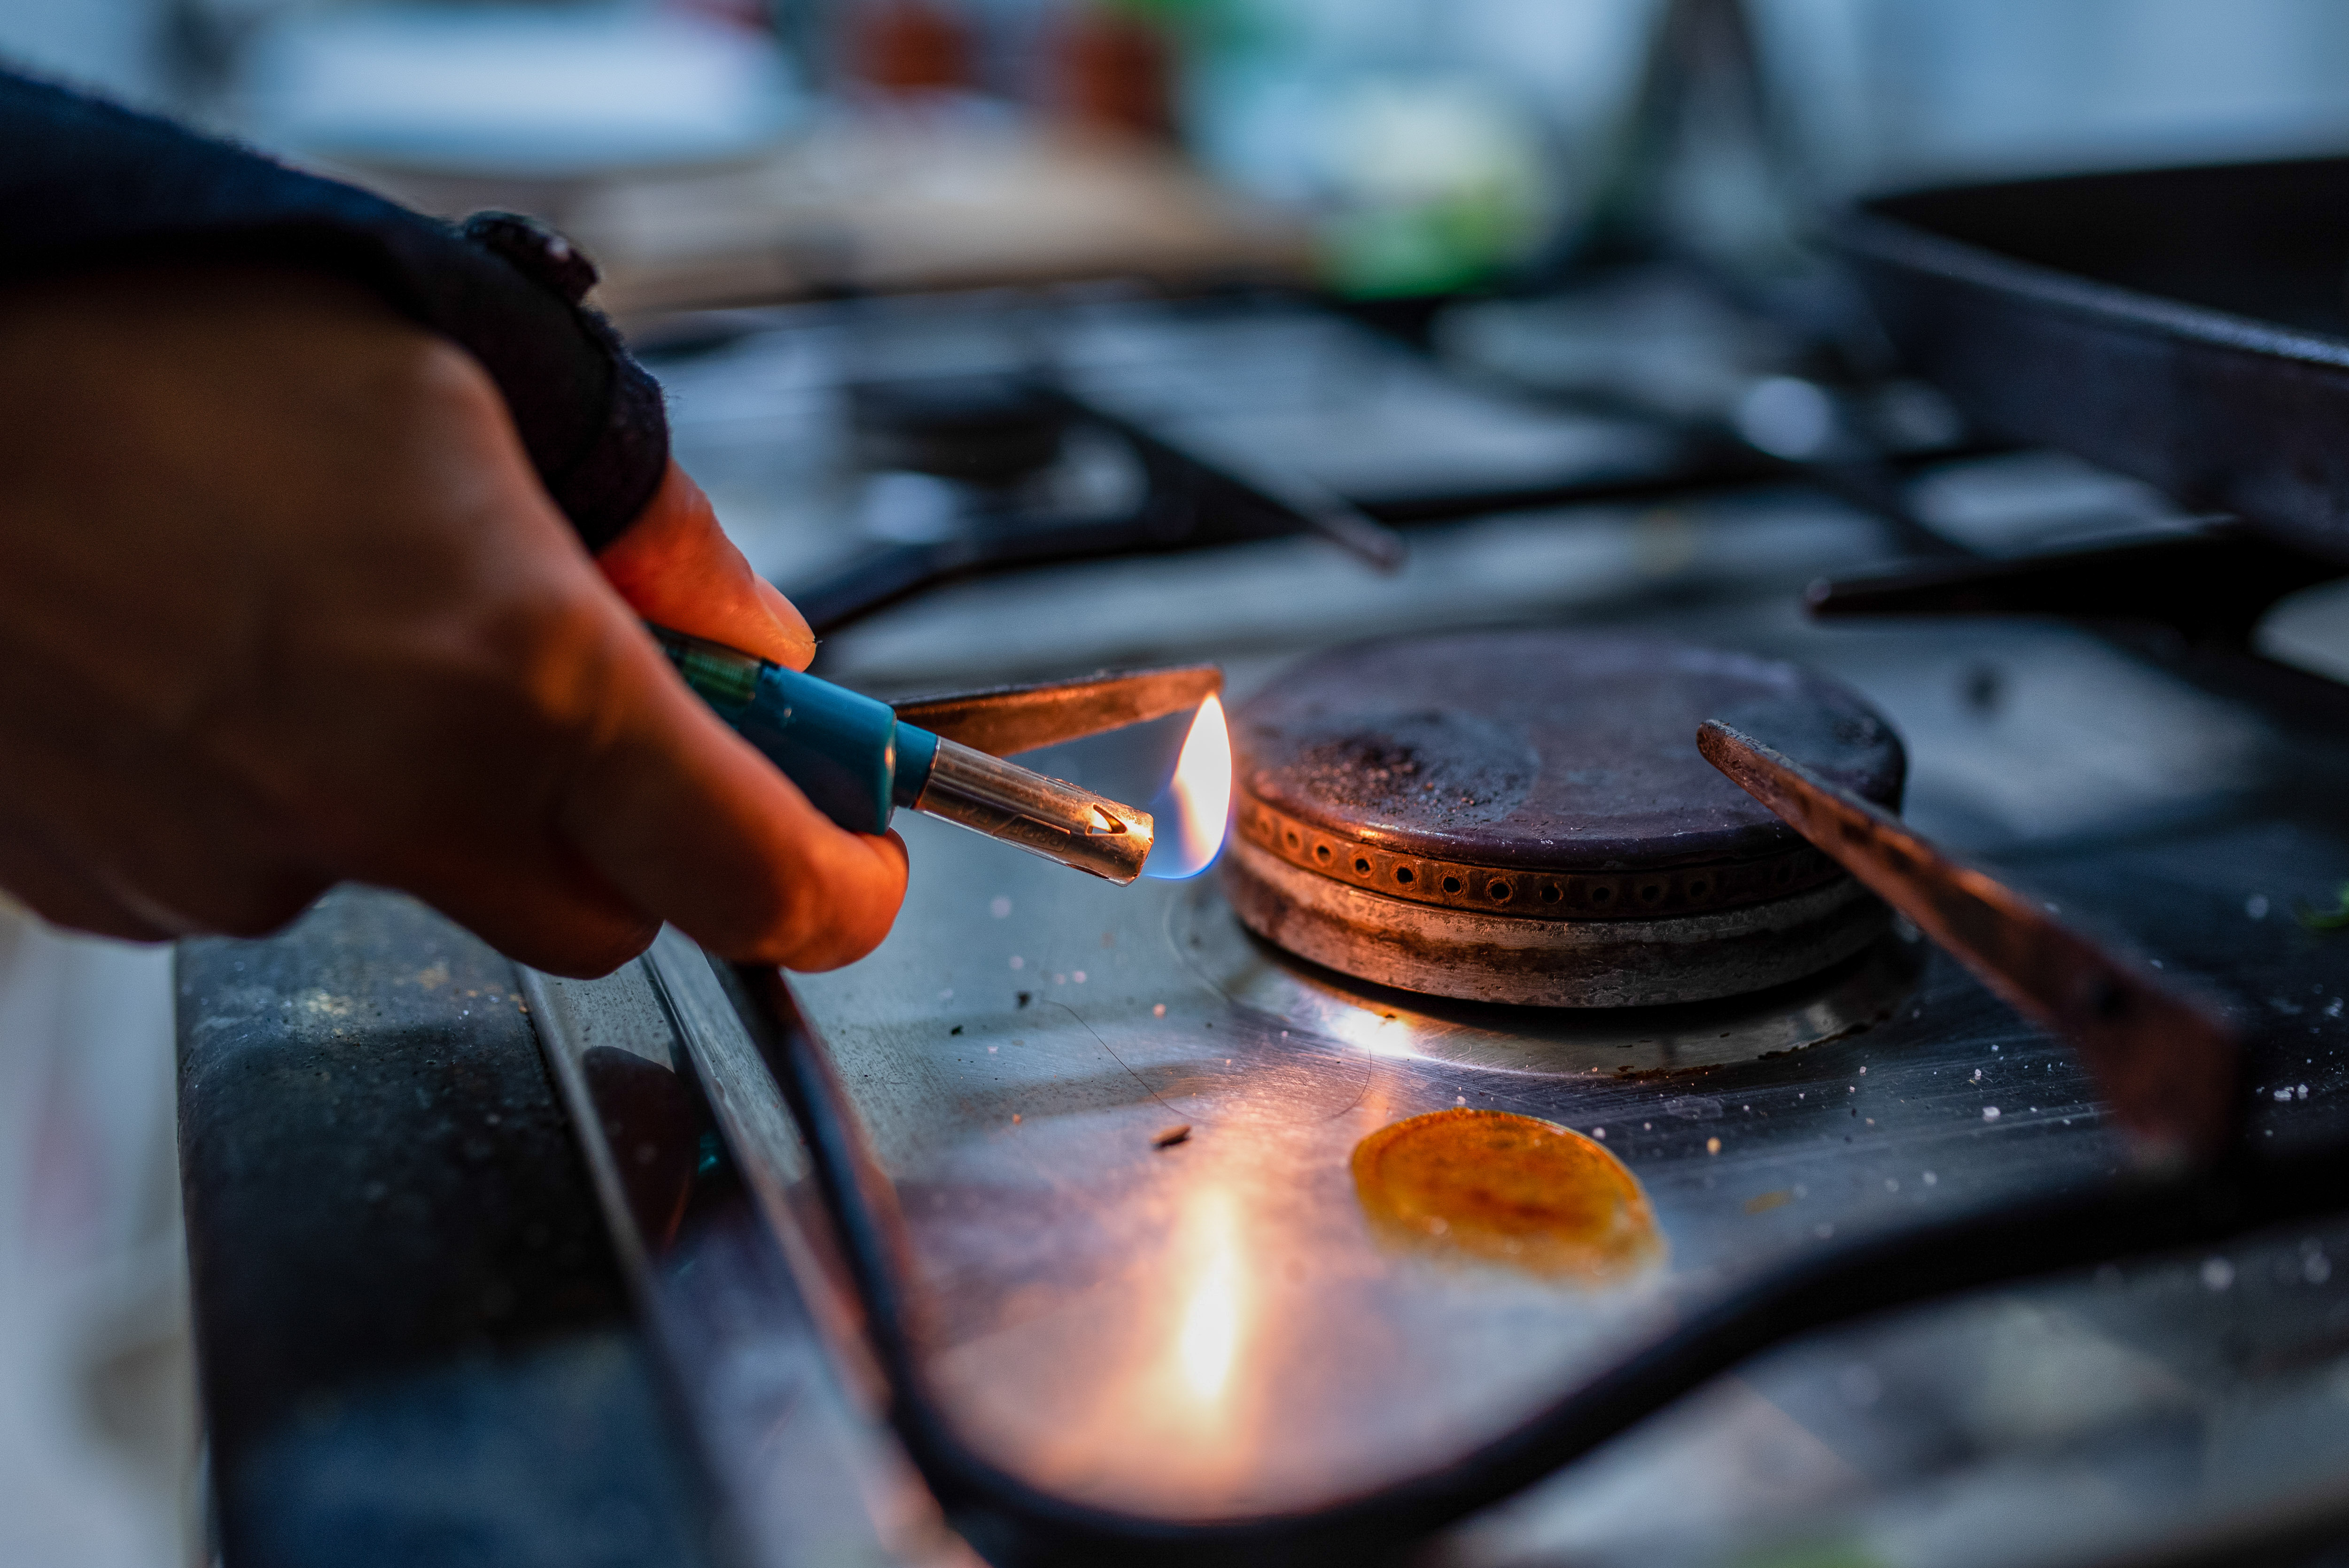 Une personne allume une cuisinière à gaz avec un briquet dans une maison | Source : Getty Images